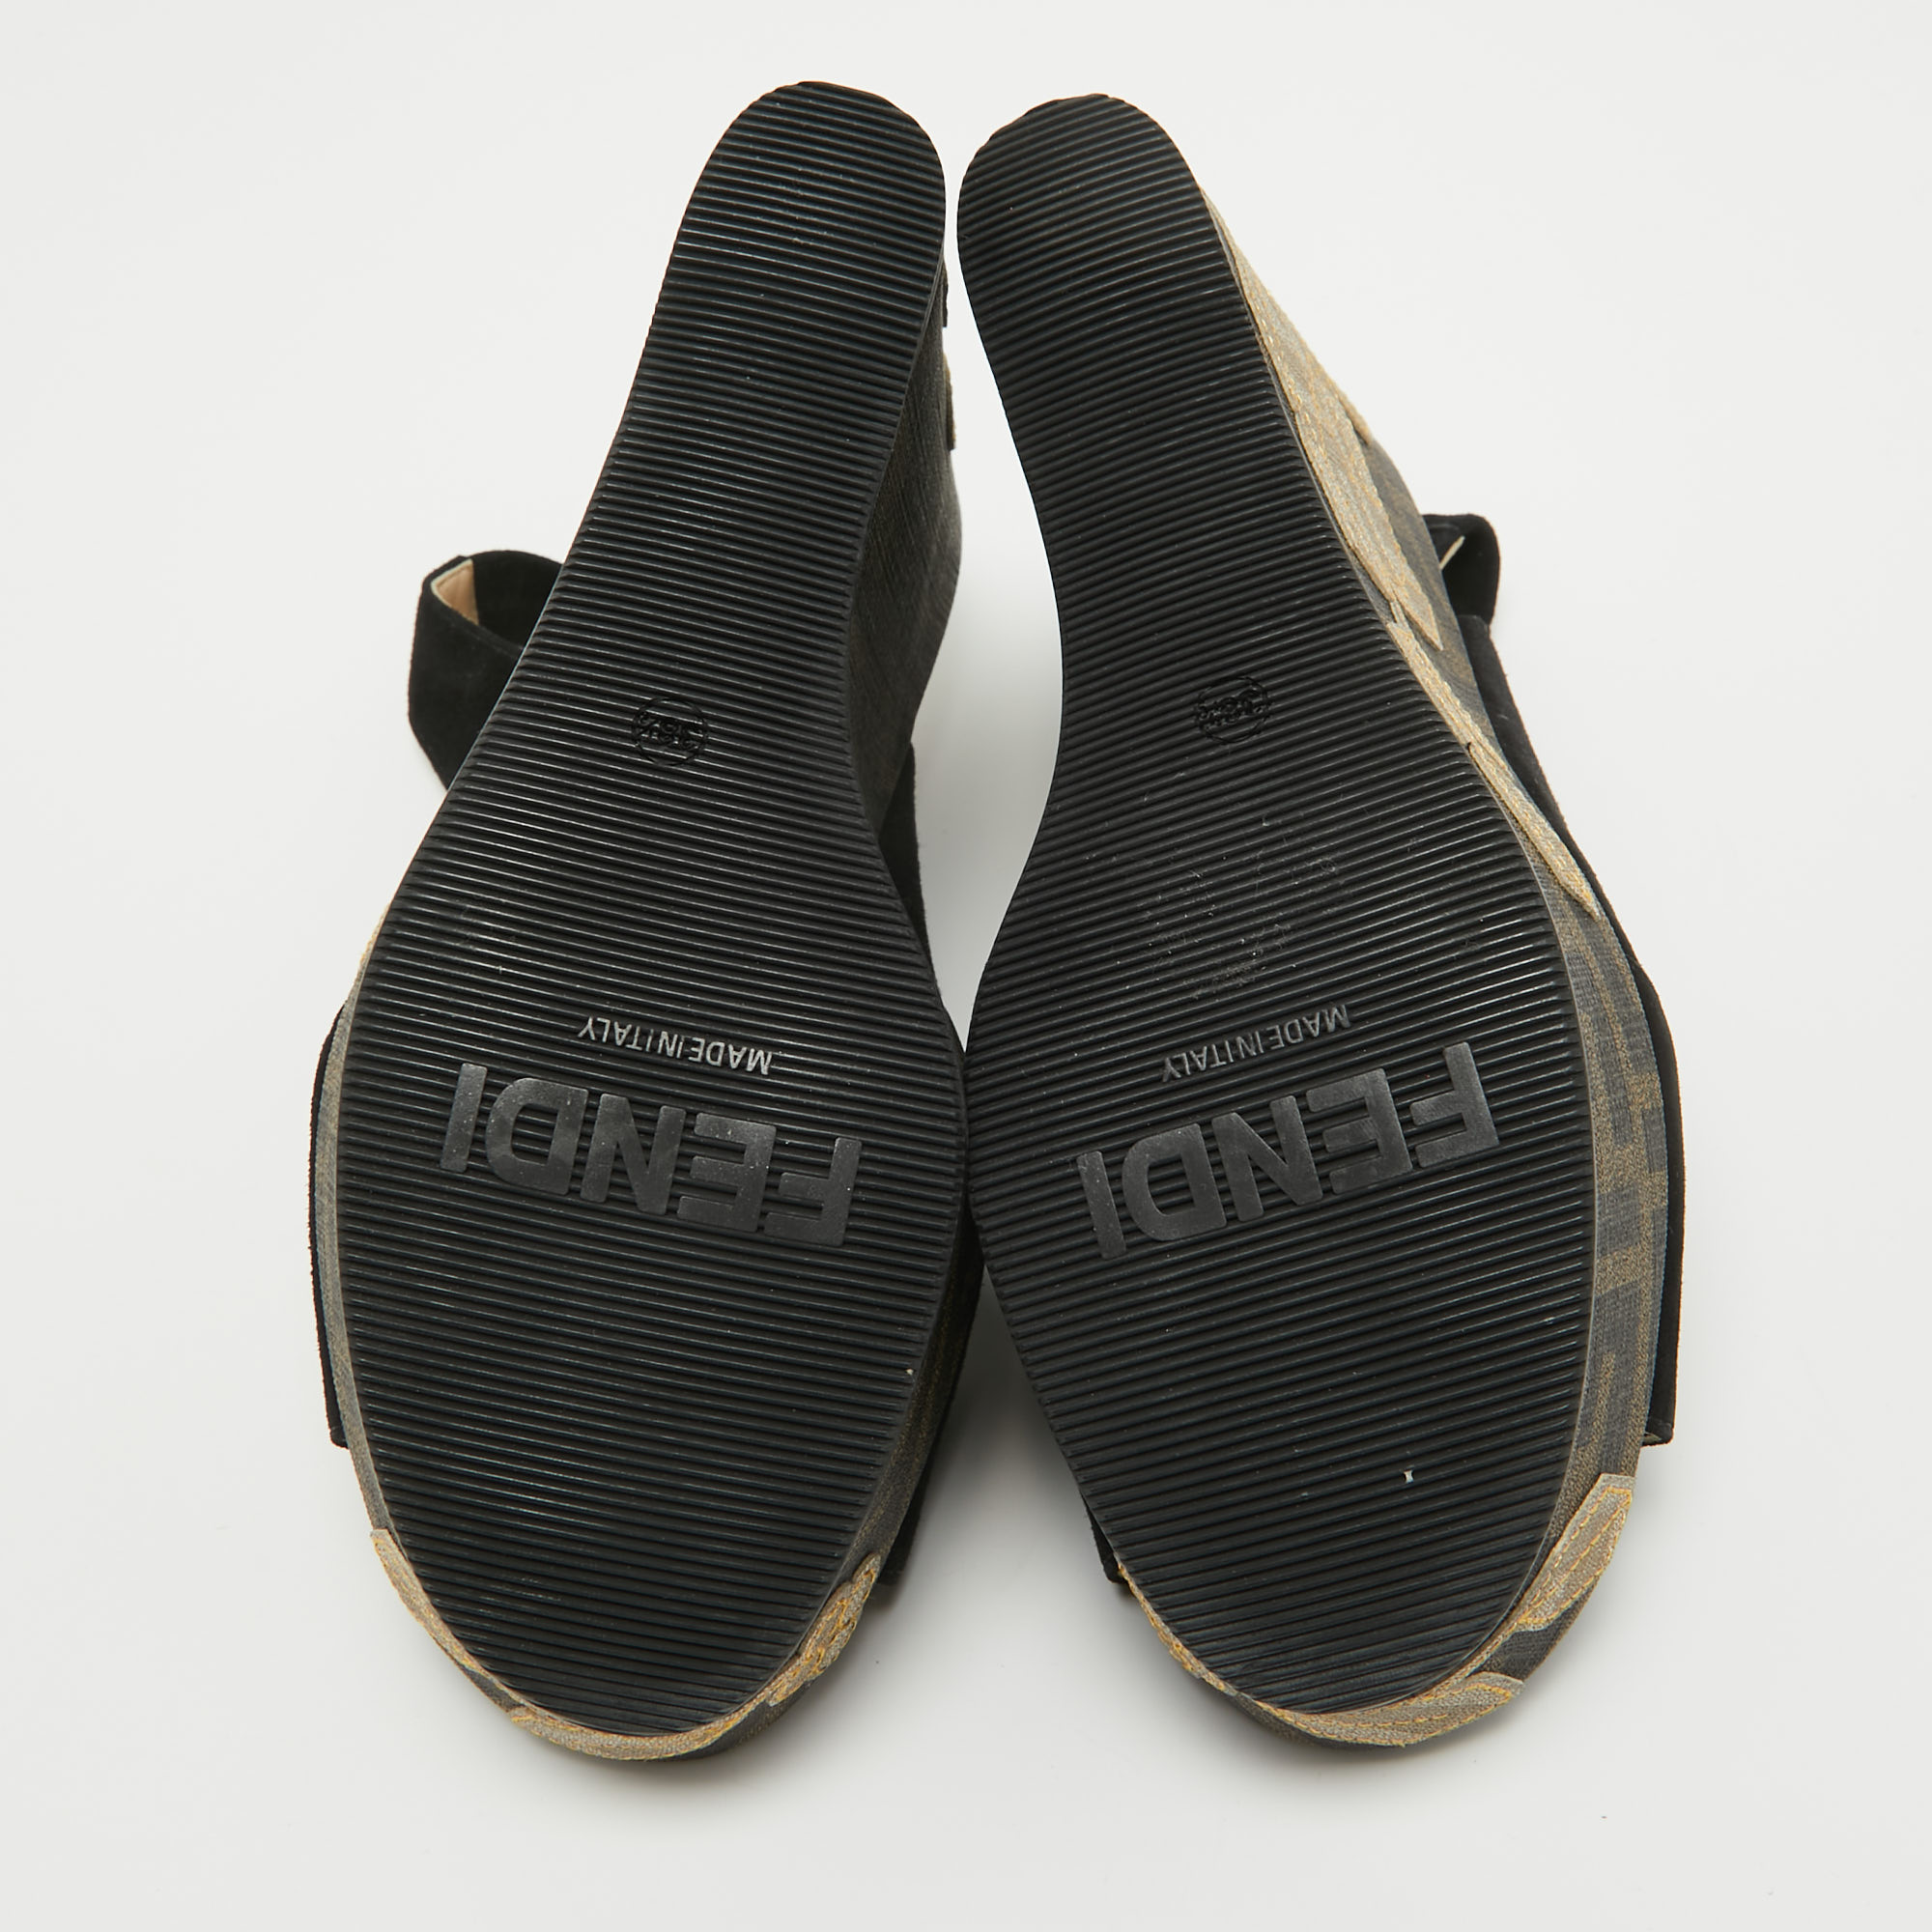 Fendi Black Suede Zucca Appliqued Wedge Platform Slingback Sandals Size 38.5